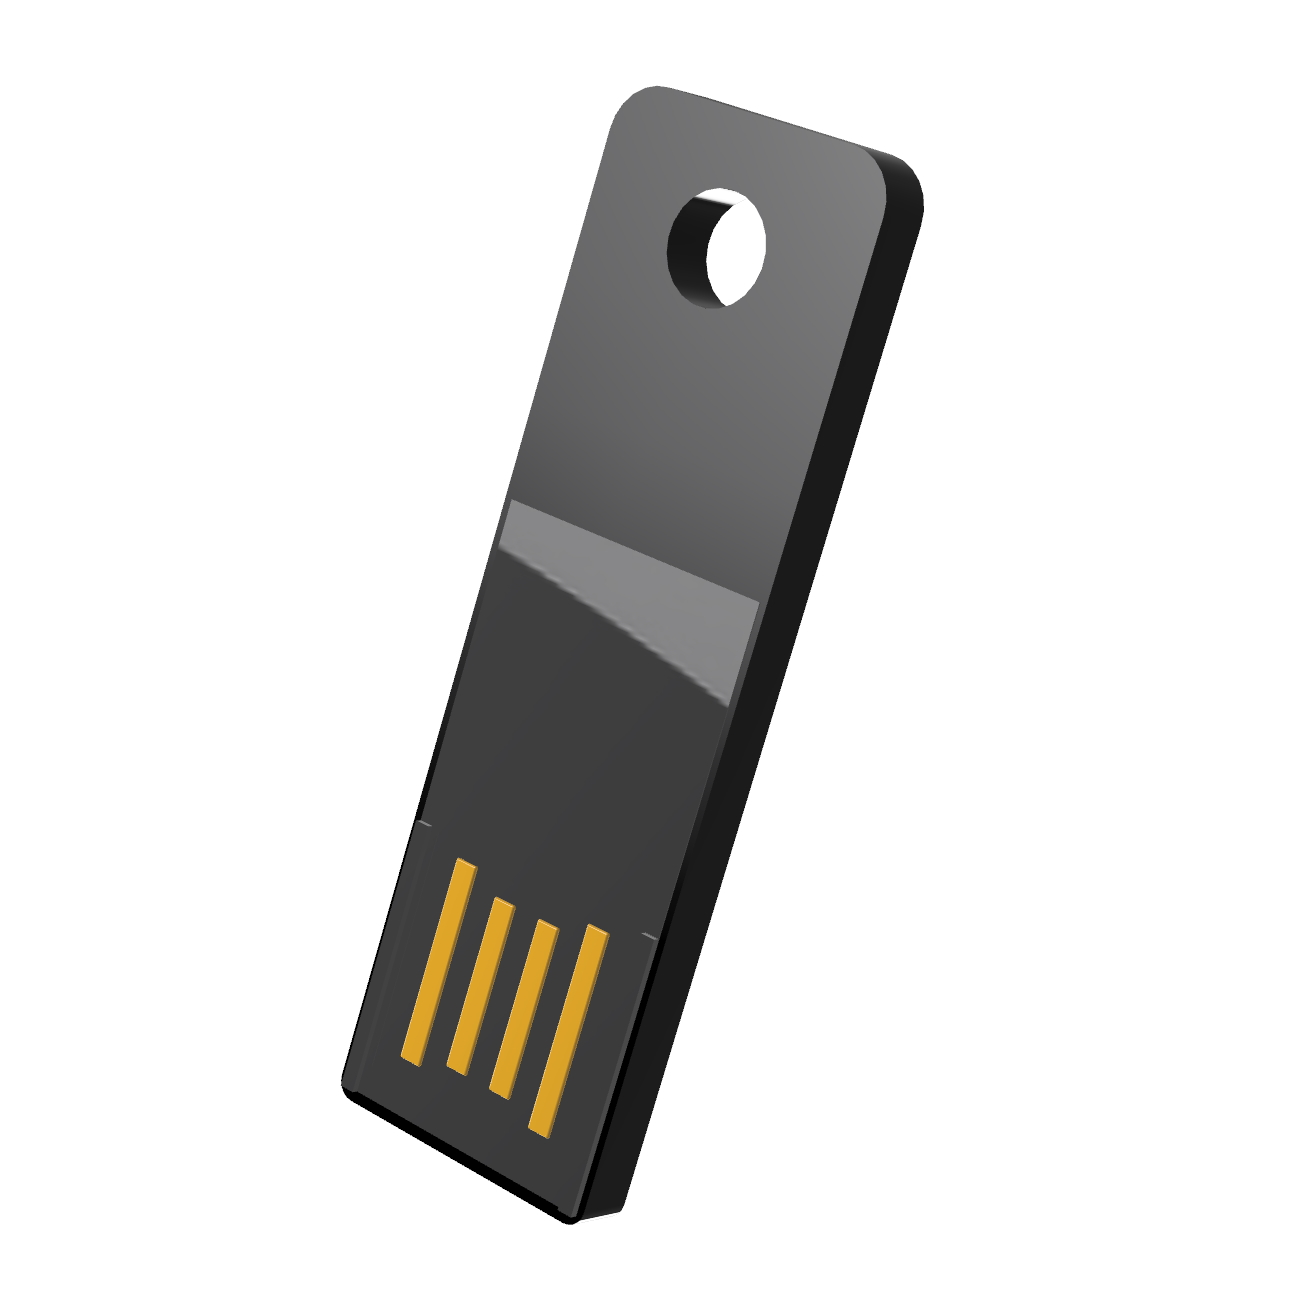 Slim USB-Stick USB GB) (Schwarz, GERMANY Mini ® 32